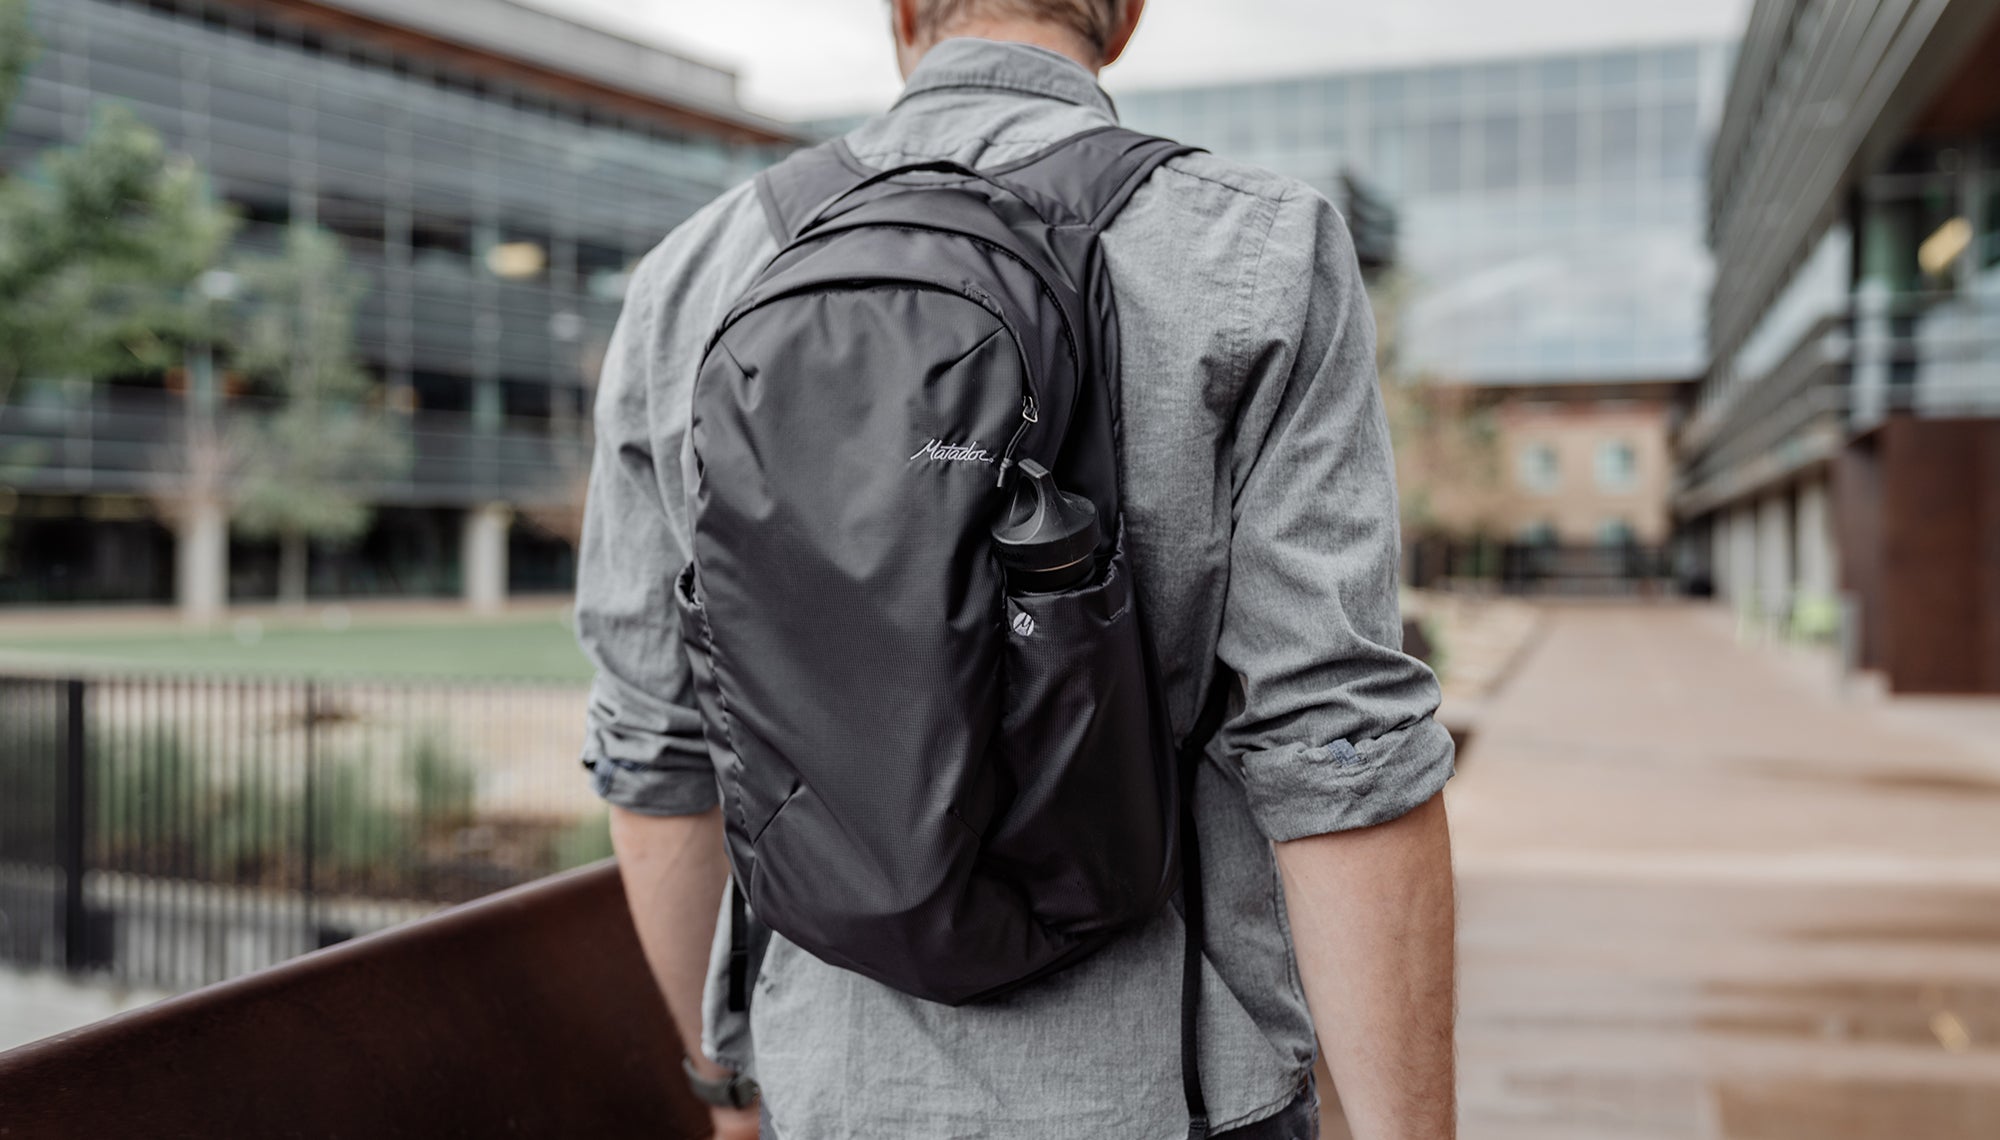 Man walking through city, wearing backpack